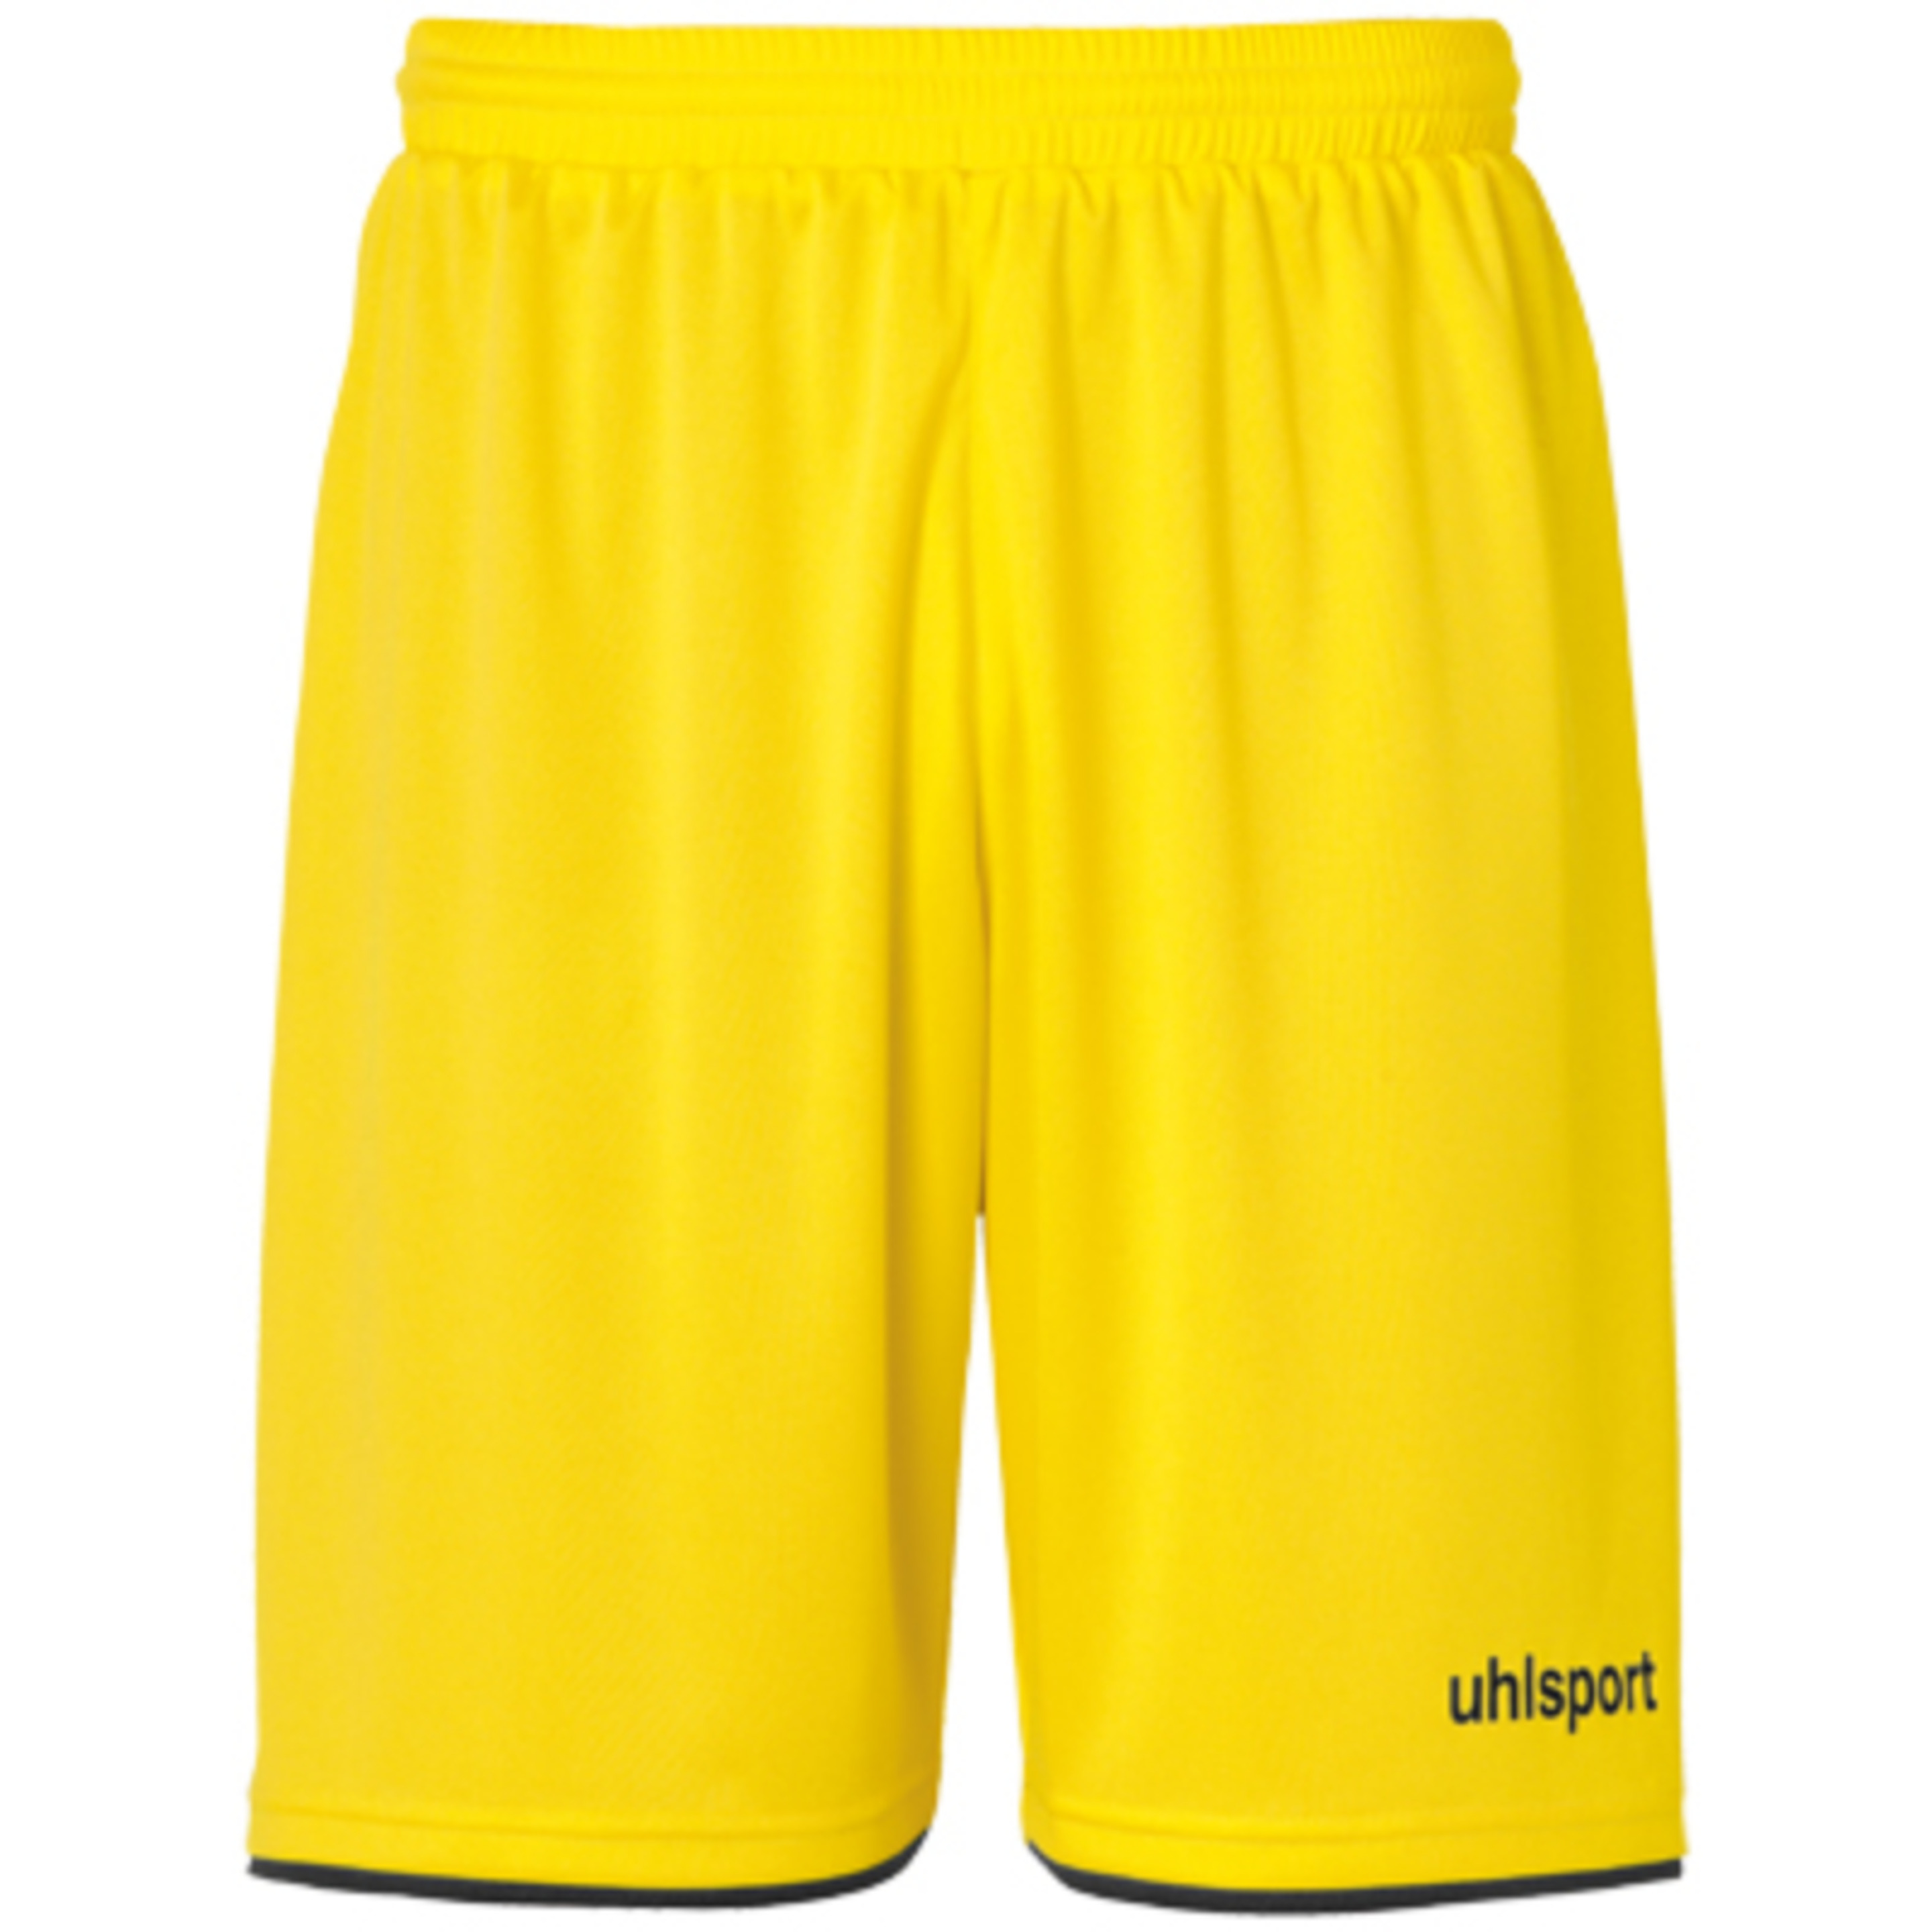 Club Shorts Lima Amarillo/negro Uhlsport - negro-amarillo - 